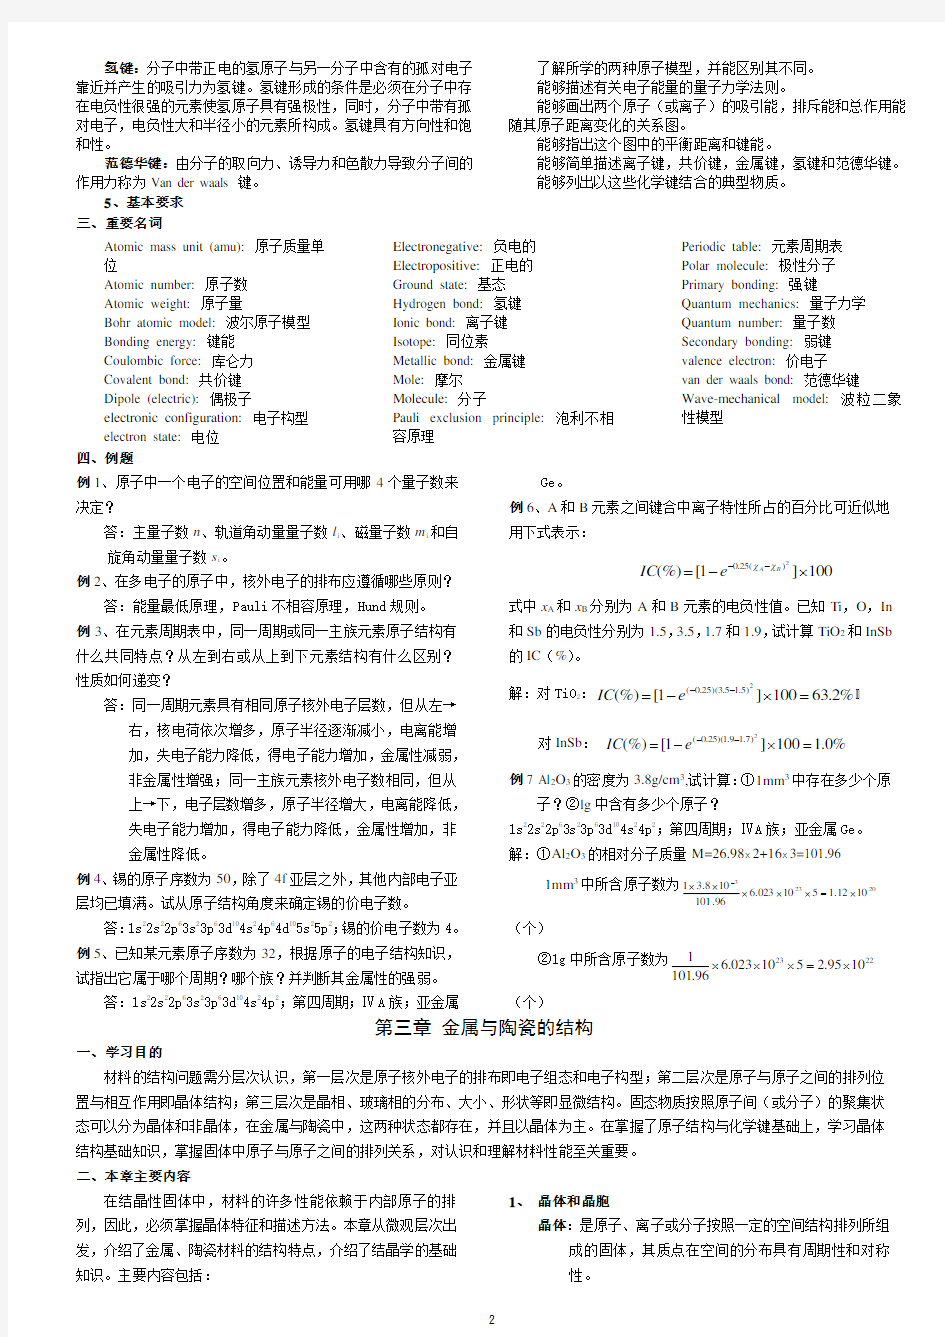 材料科学与工程基础知识点(打印版)英汉双语版